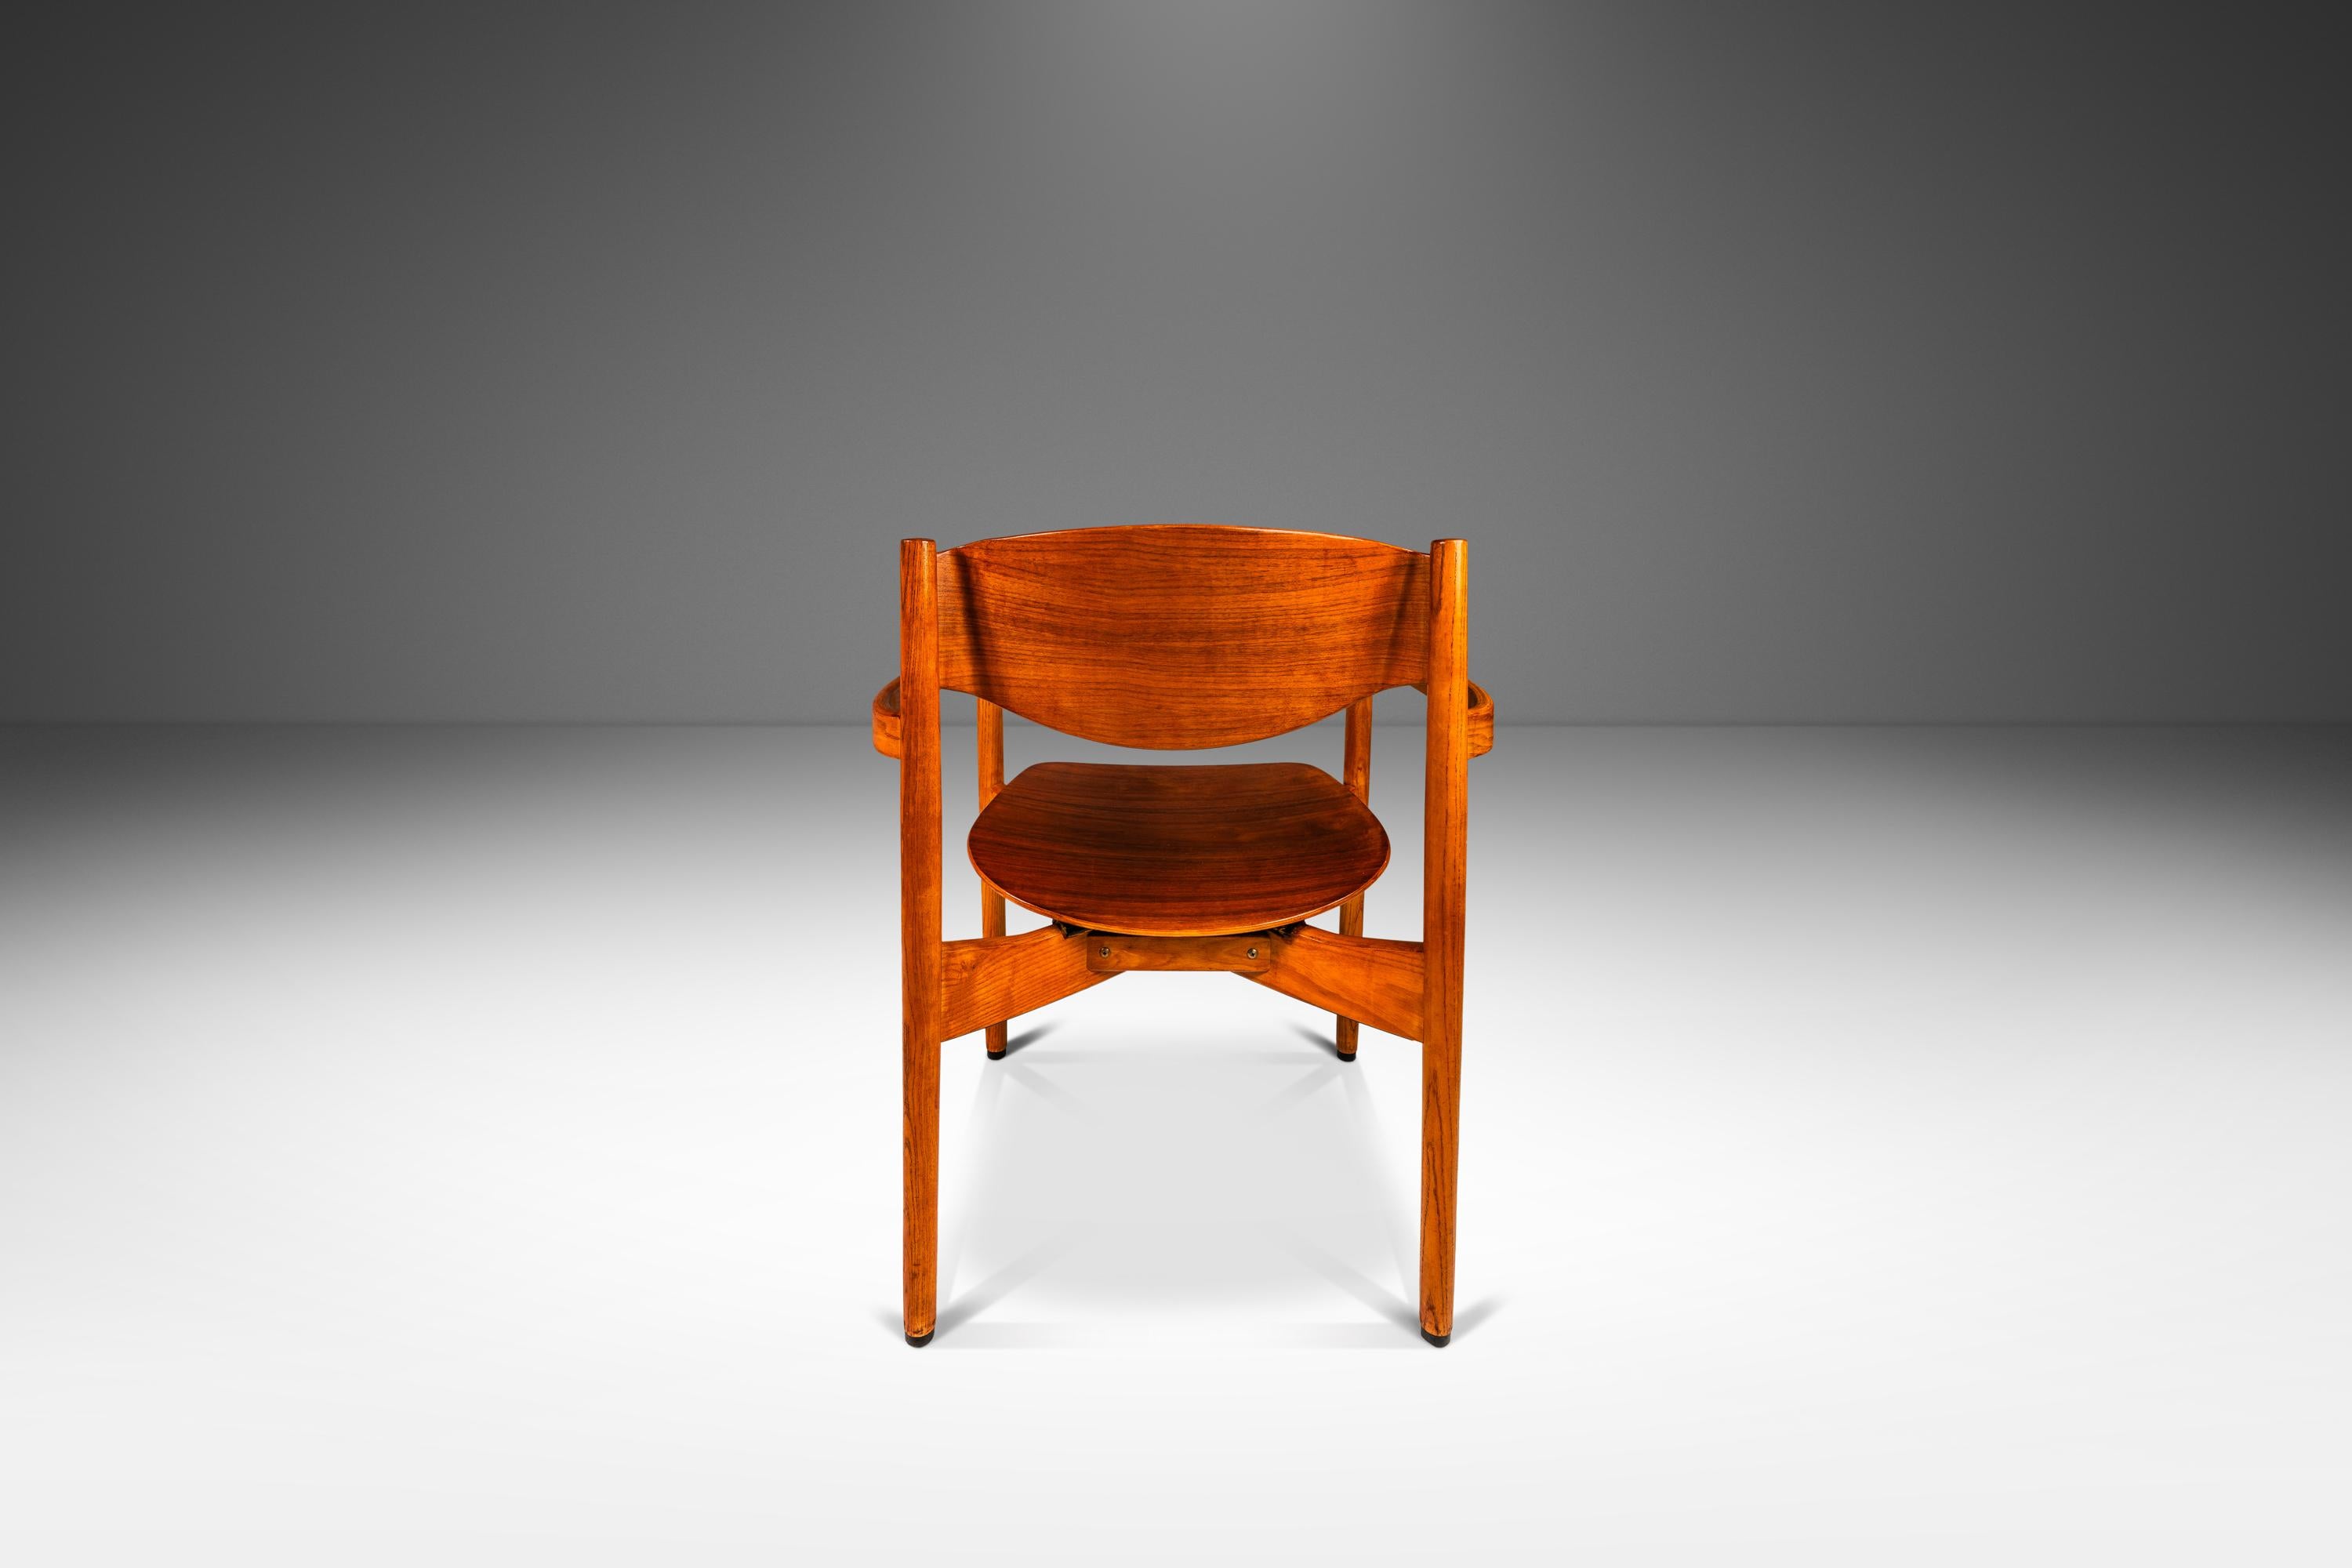 Einzelner Mid-Century Modern Chair in Eiche und Nussbaum  Von Jens Risom, USA, ca. 1960er Jahre (Skandinavische Moderne) im Angebot